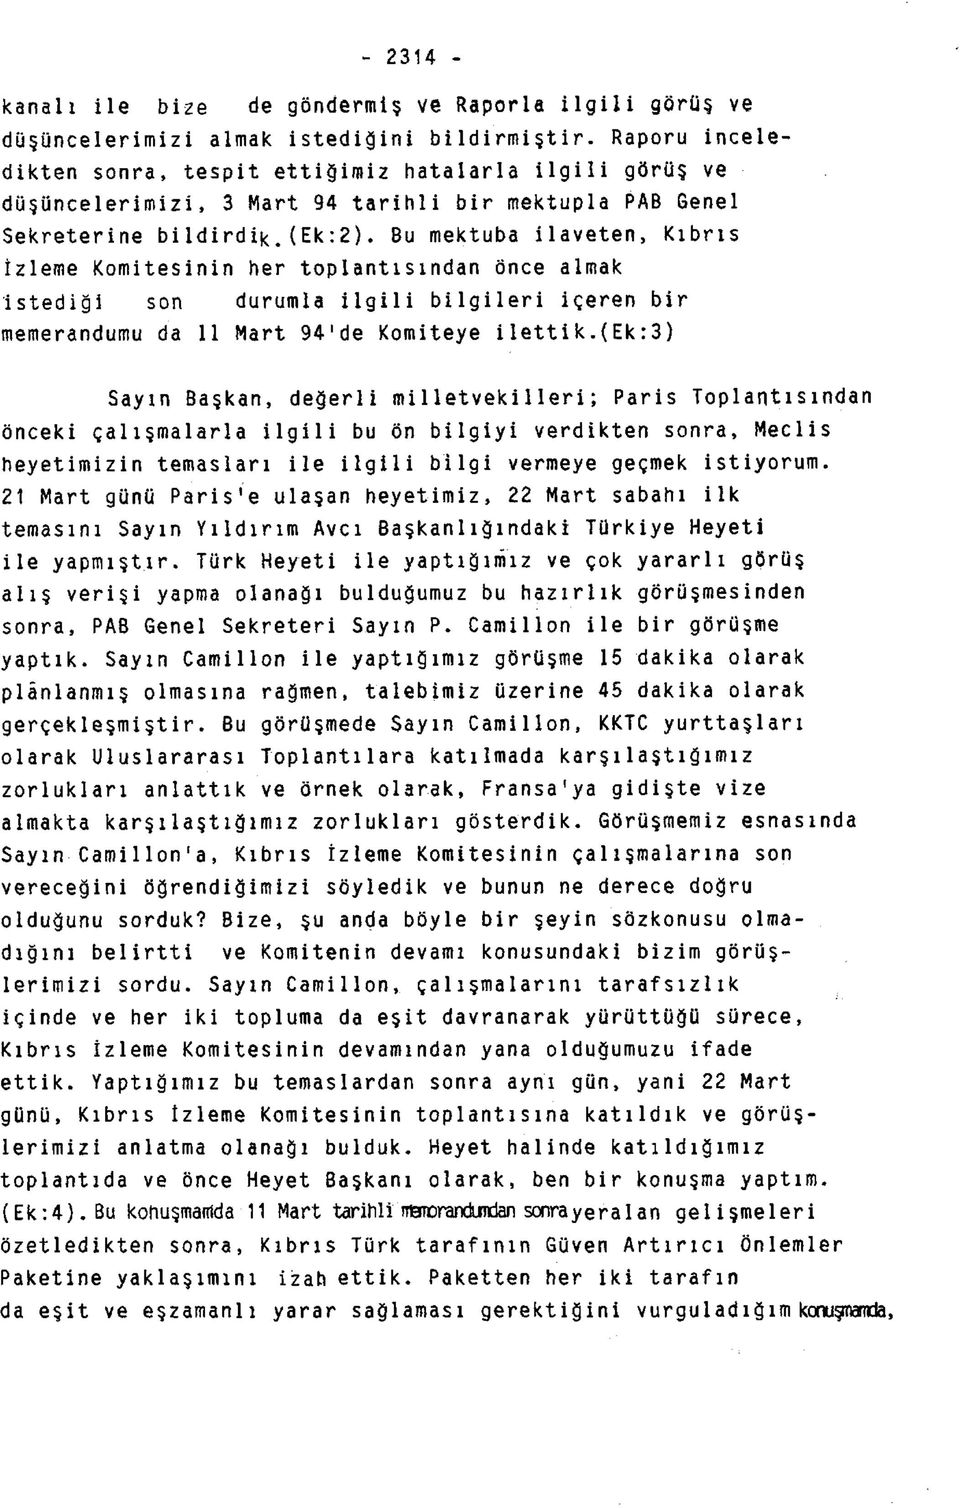 Bu mektuba ilaveten, Kıbrıs İzleme Komitesinin her toplantısından önce almak istediği son durumla ilgili bilgileri içeren bir memerandumu da 11 Mart 94'de Komiteye ilettik.